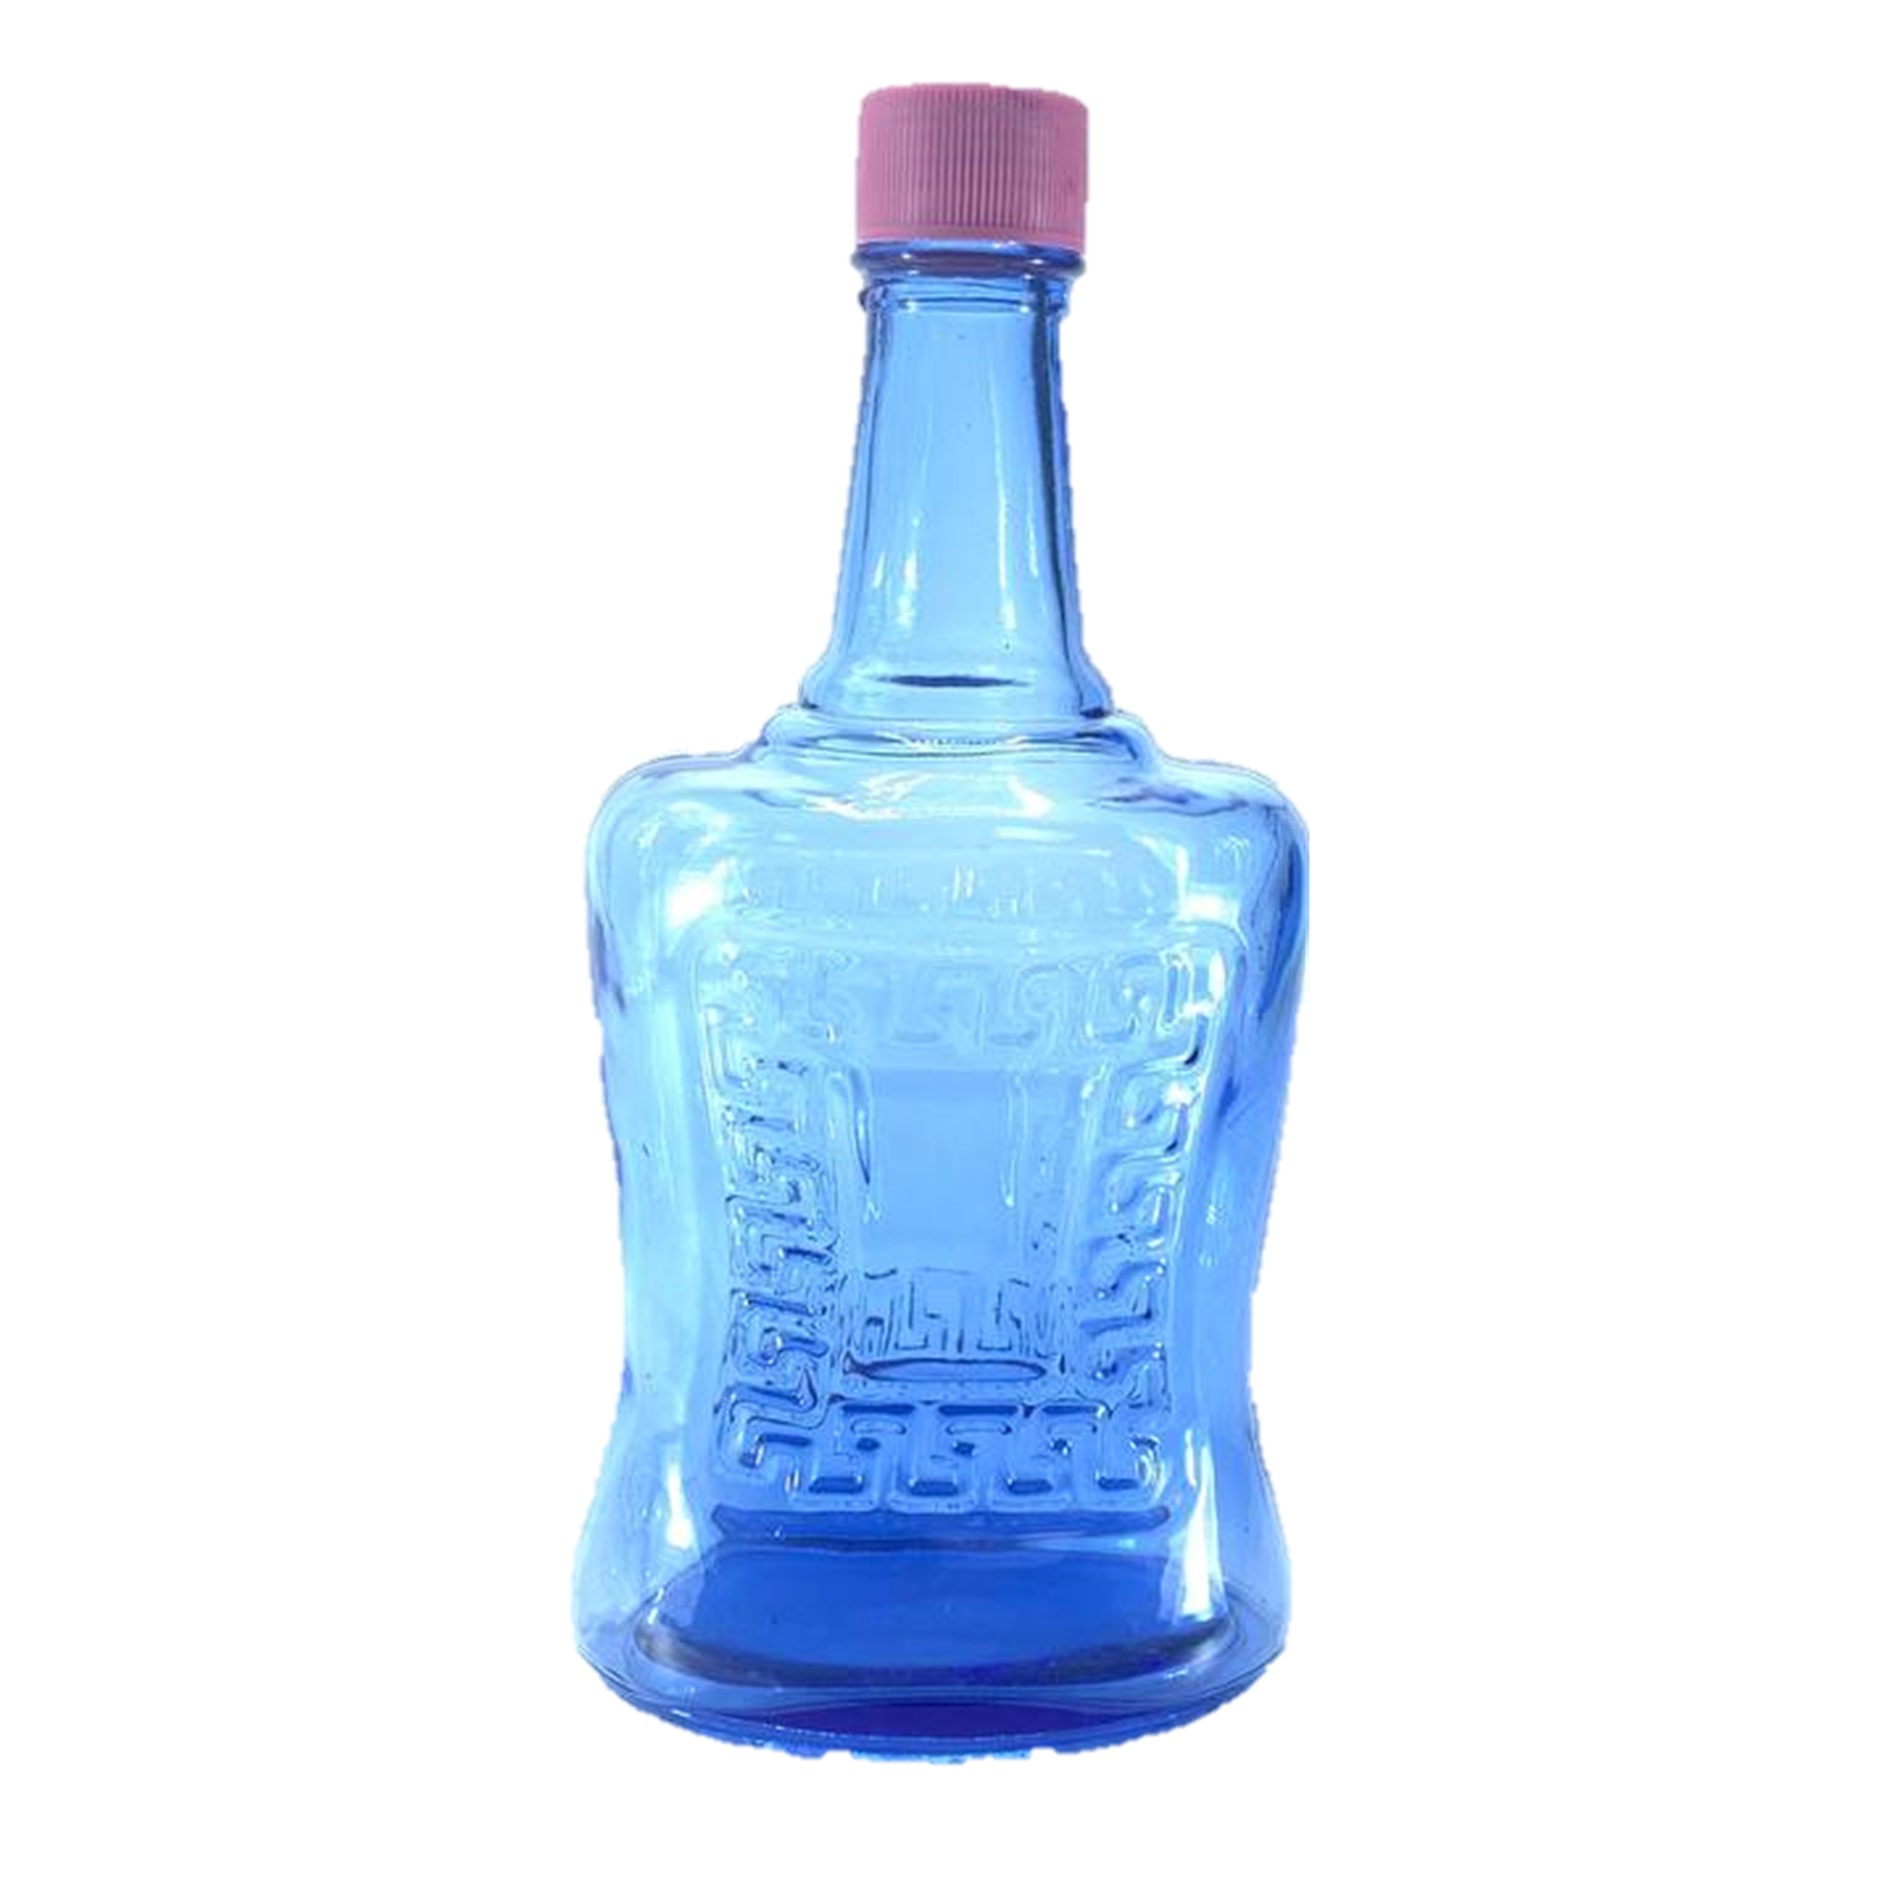 Versace bottle 1.5 liters